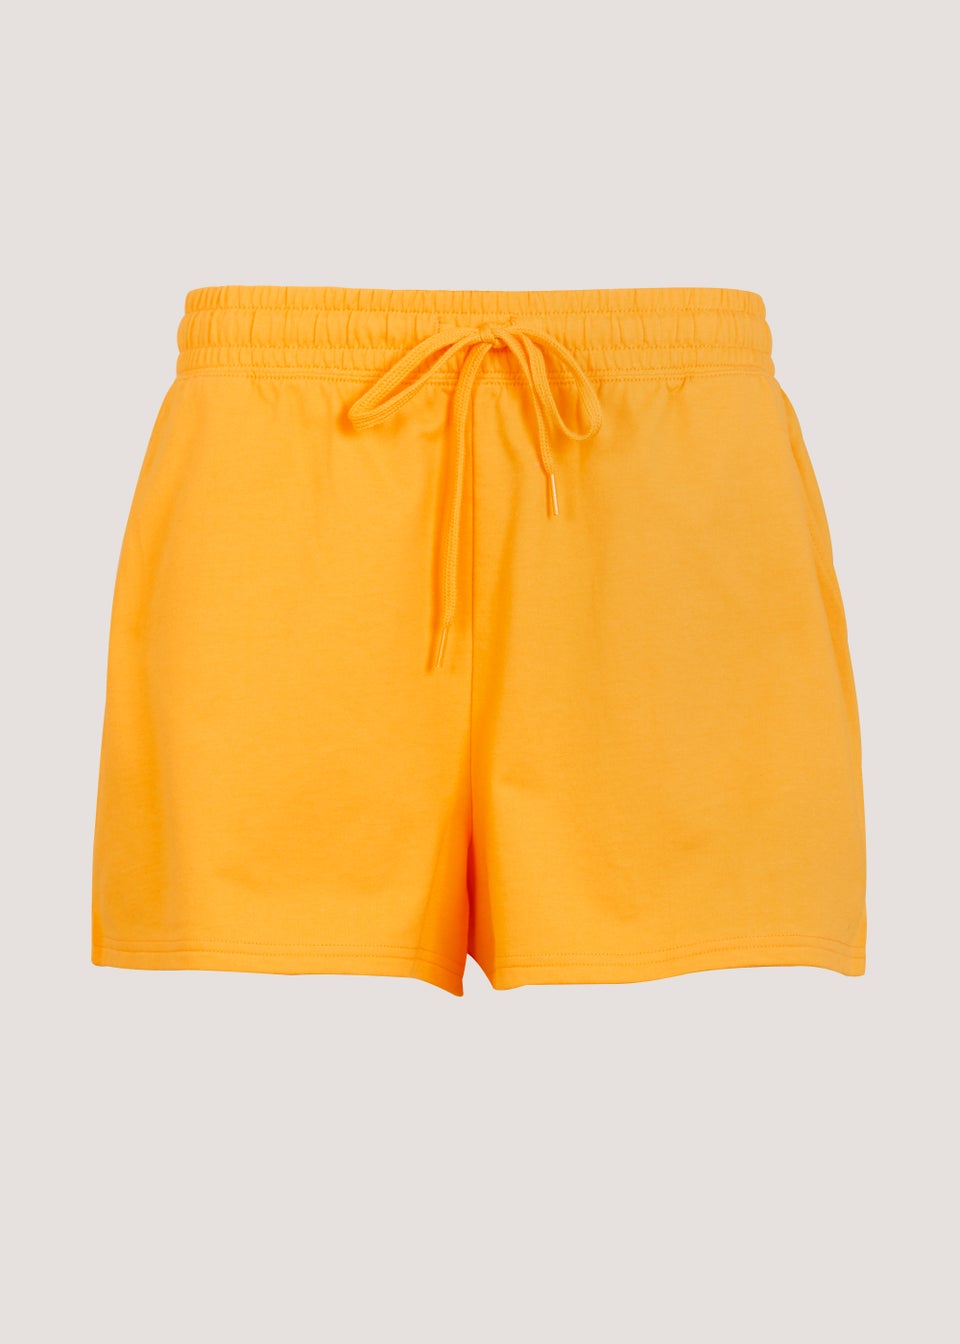 Orange Shorts - Matalan